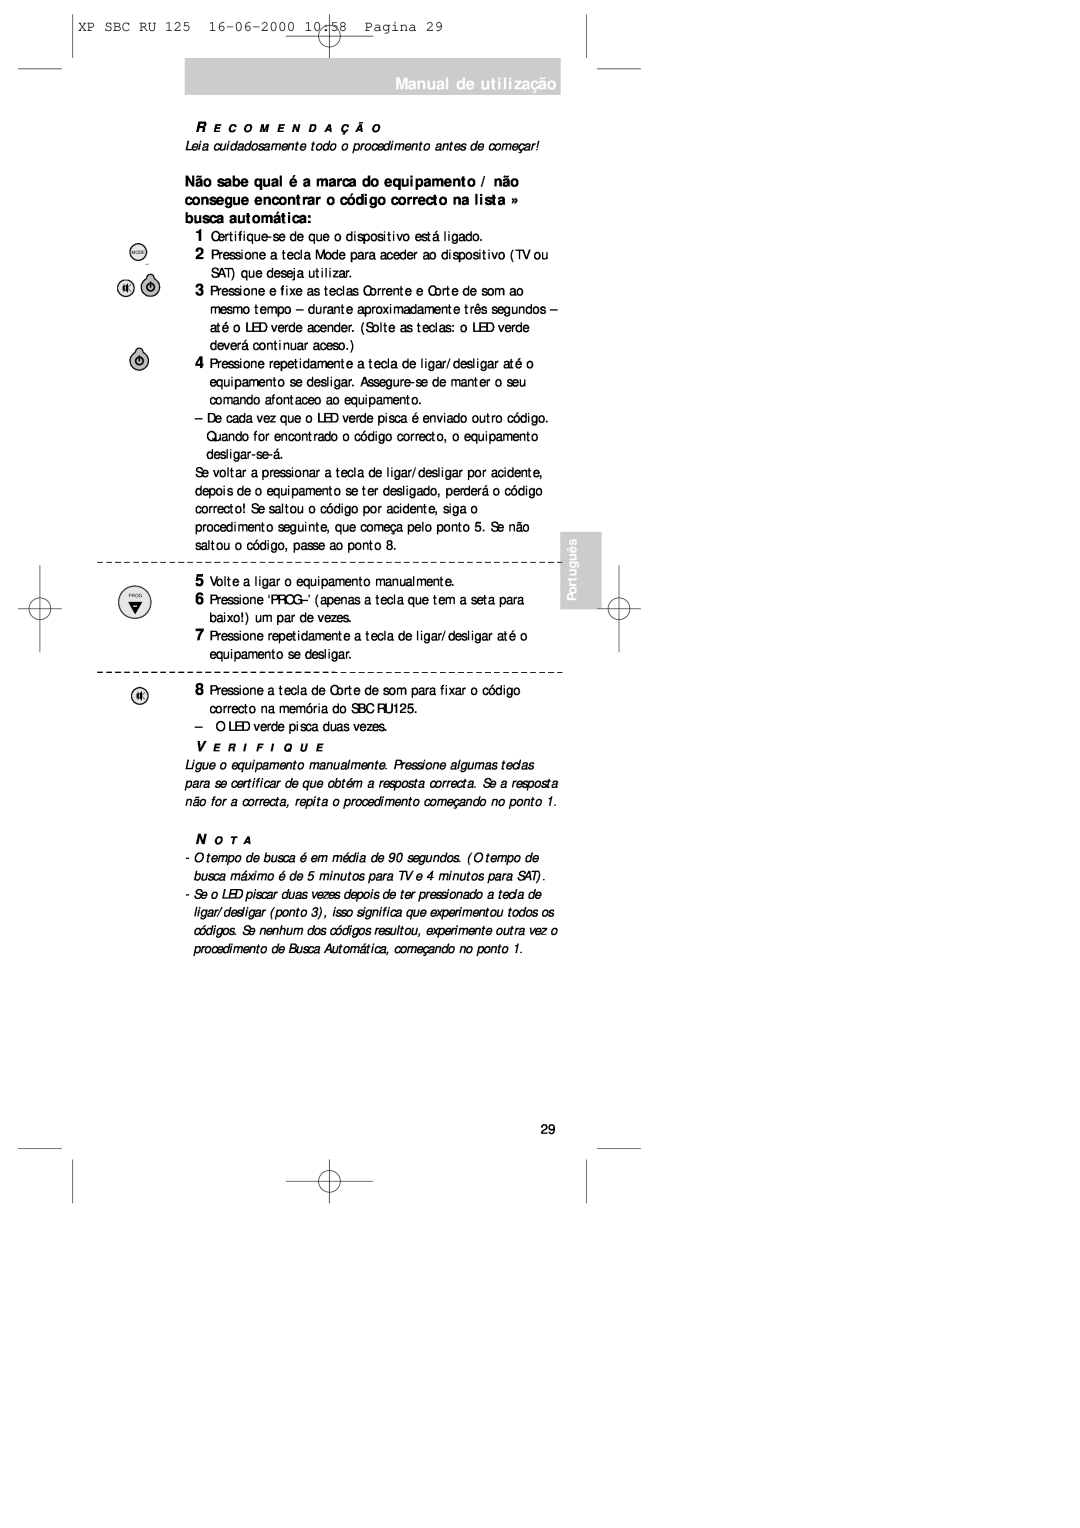 Philips RU125 manual Manual de utilização, Certifique-sede que o dispositivo está ligado 